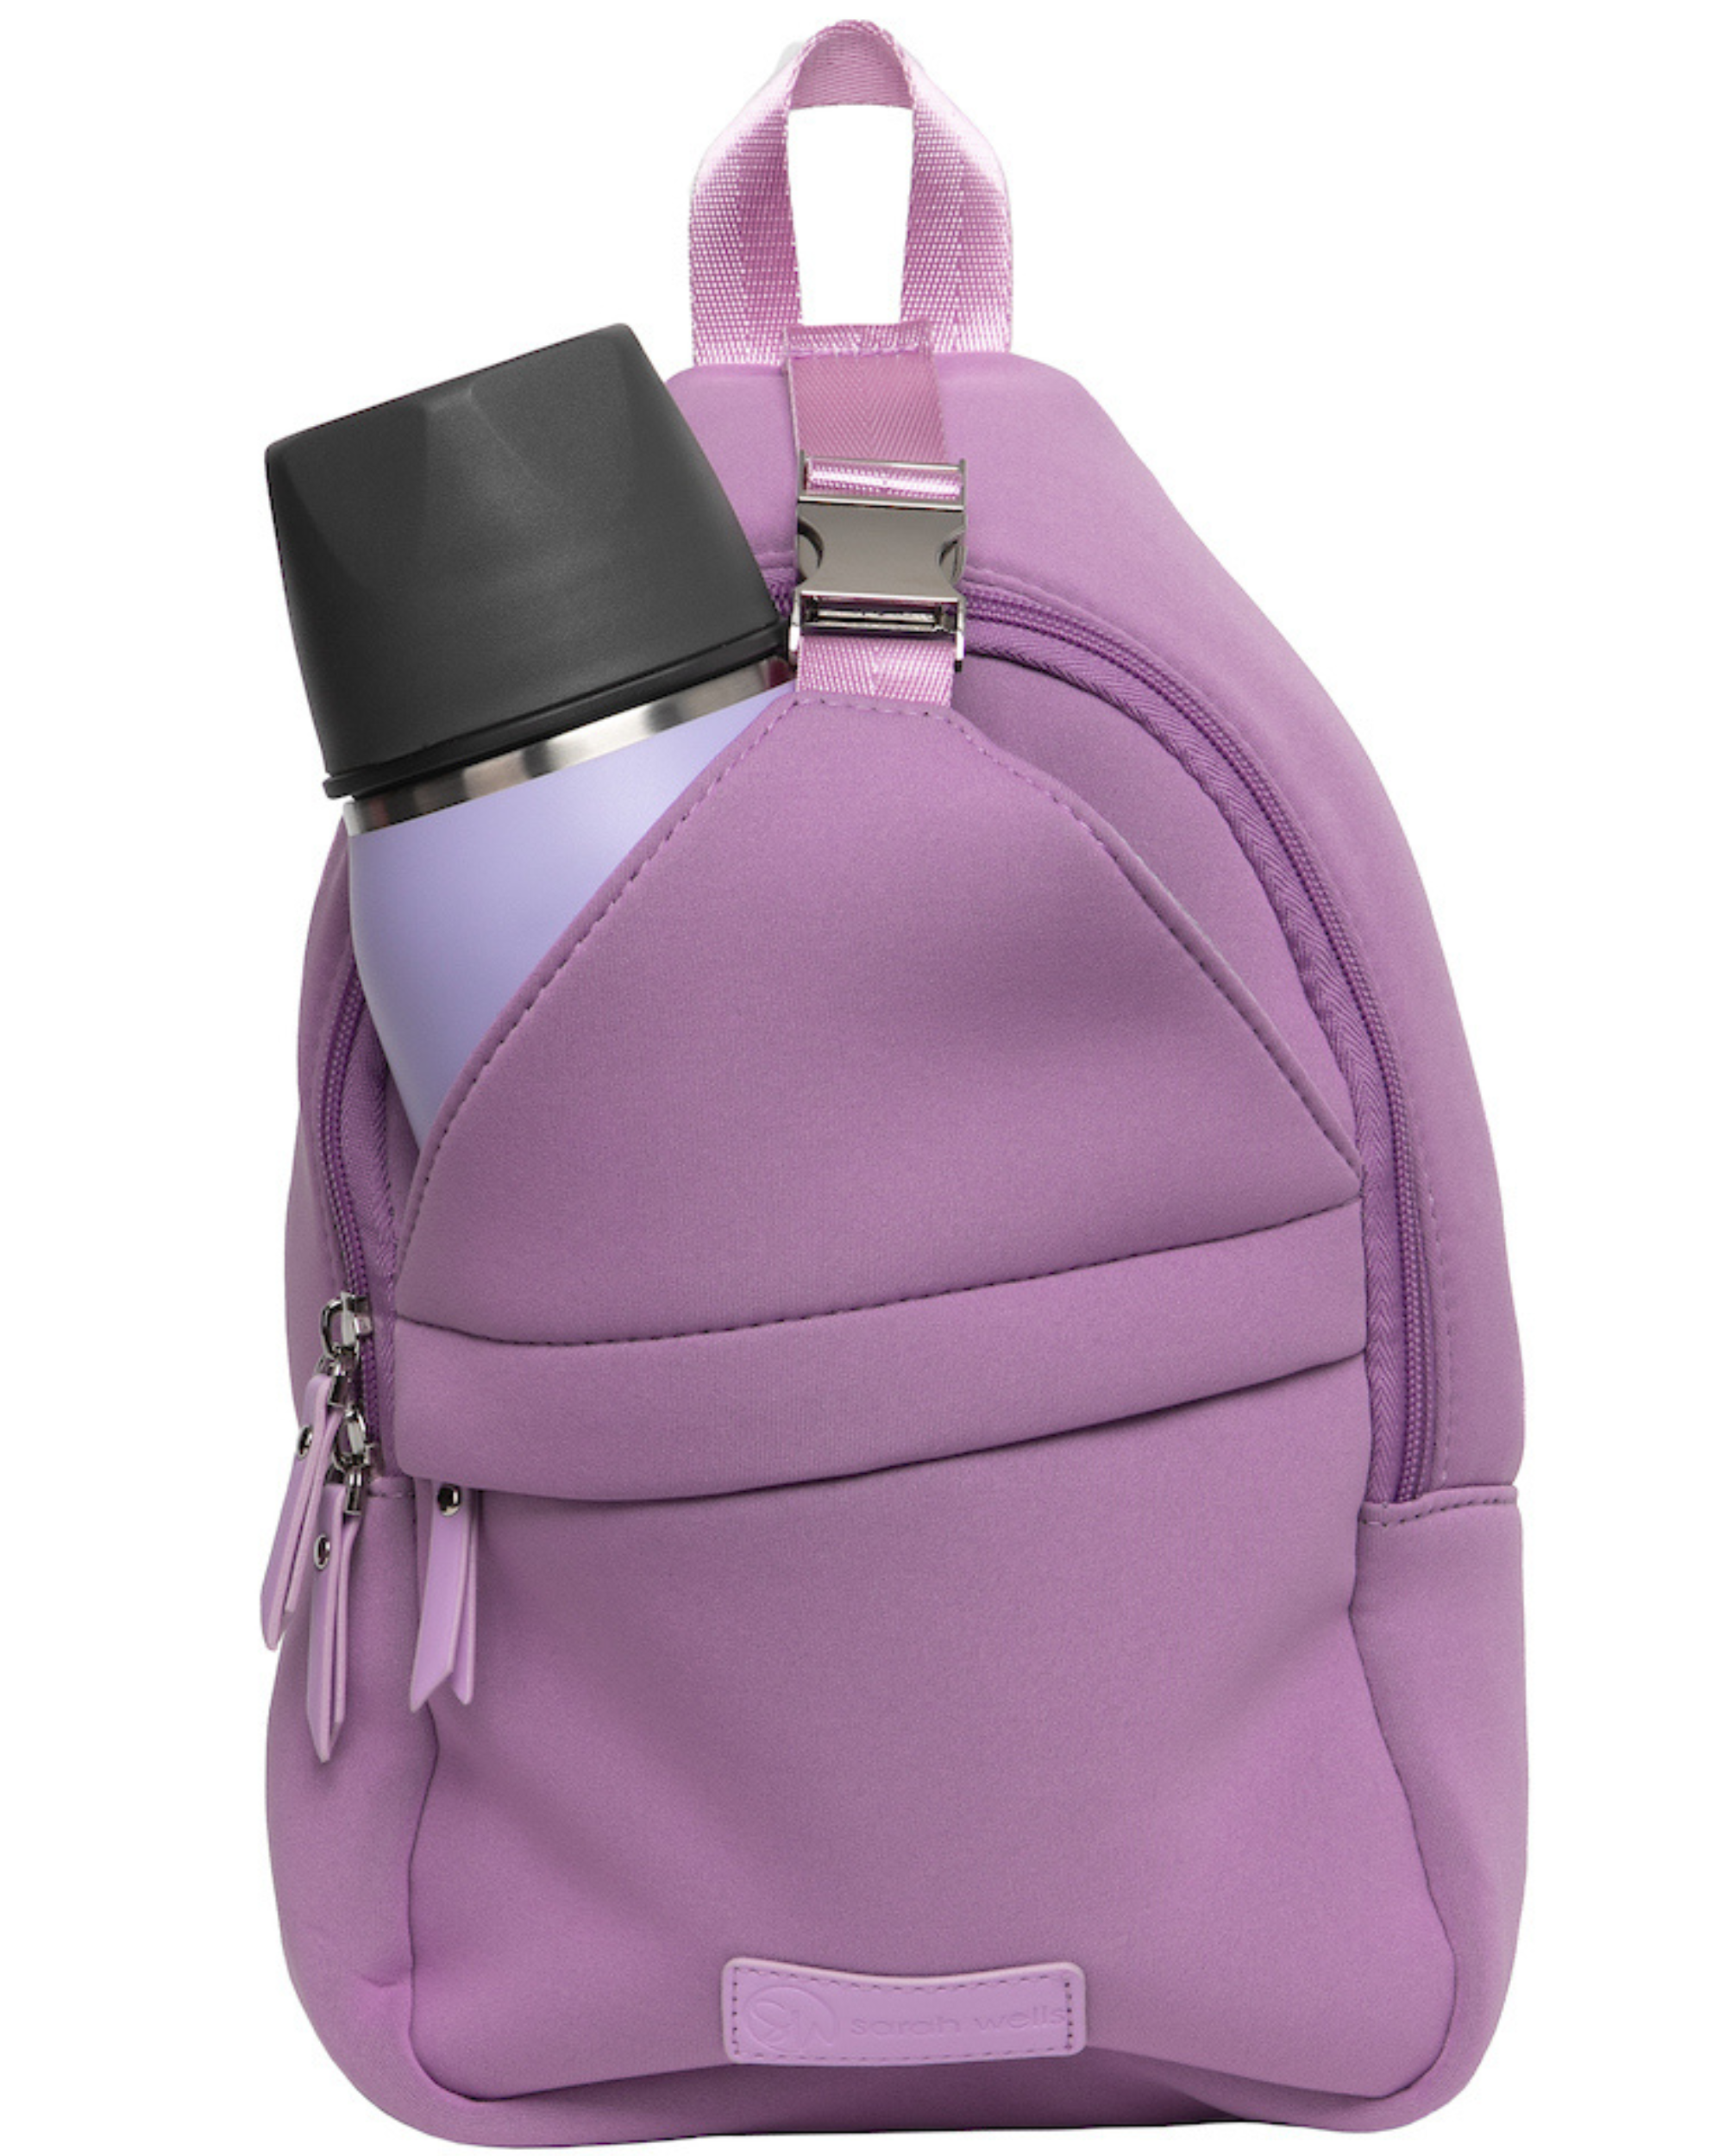 Fashion Simple Small Bag PU Leather Sling Bags Handbags Trendy Tote  Shoulder Bag PURPLE - Walmart.com